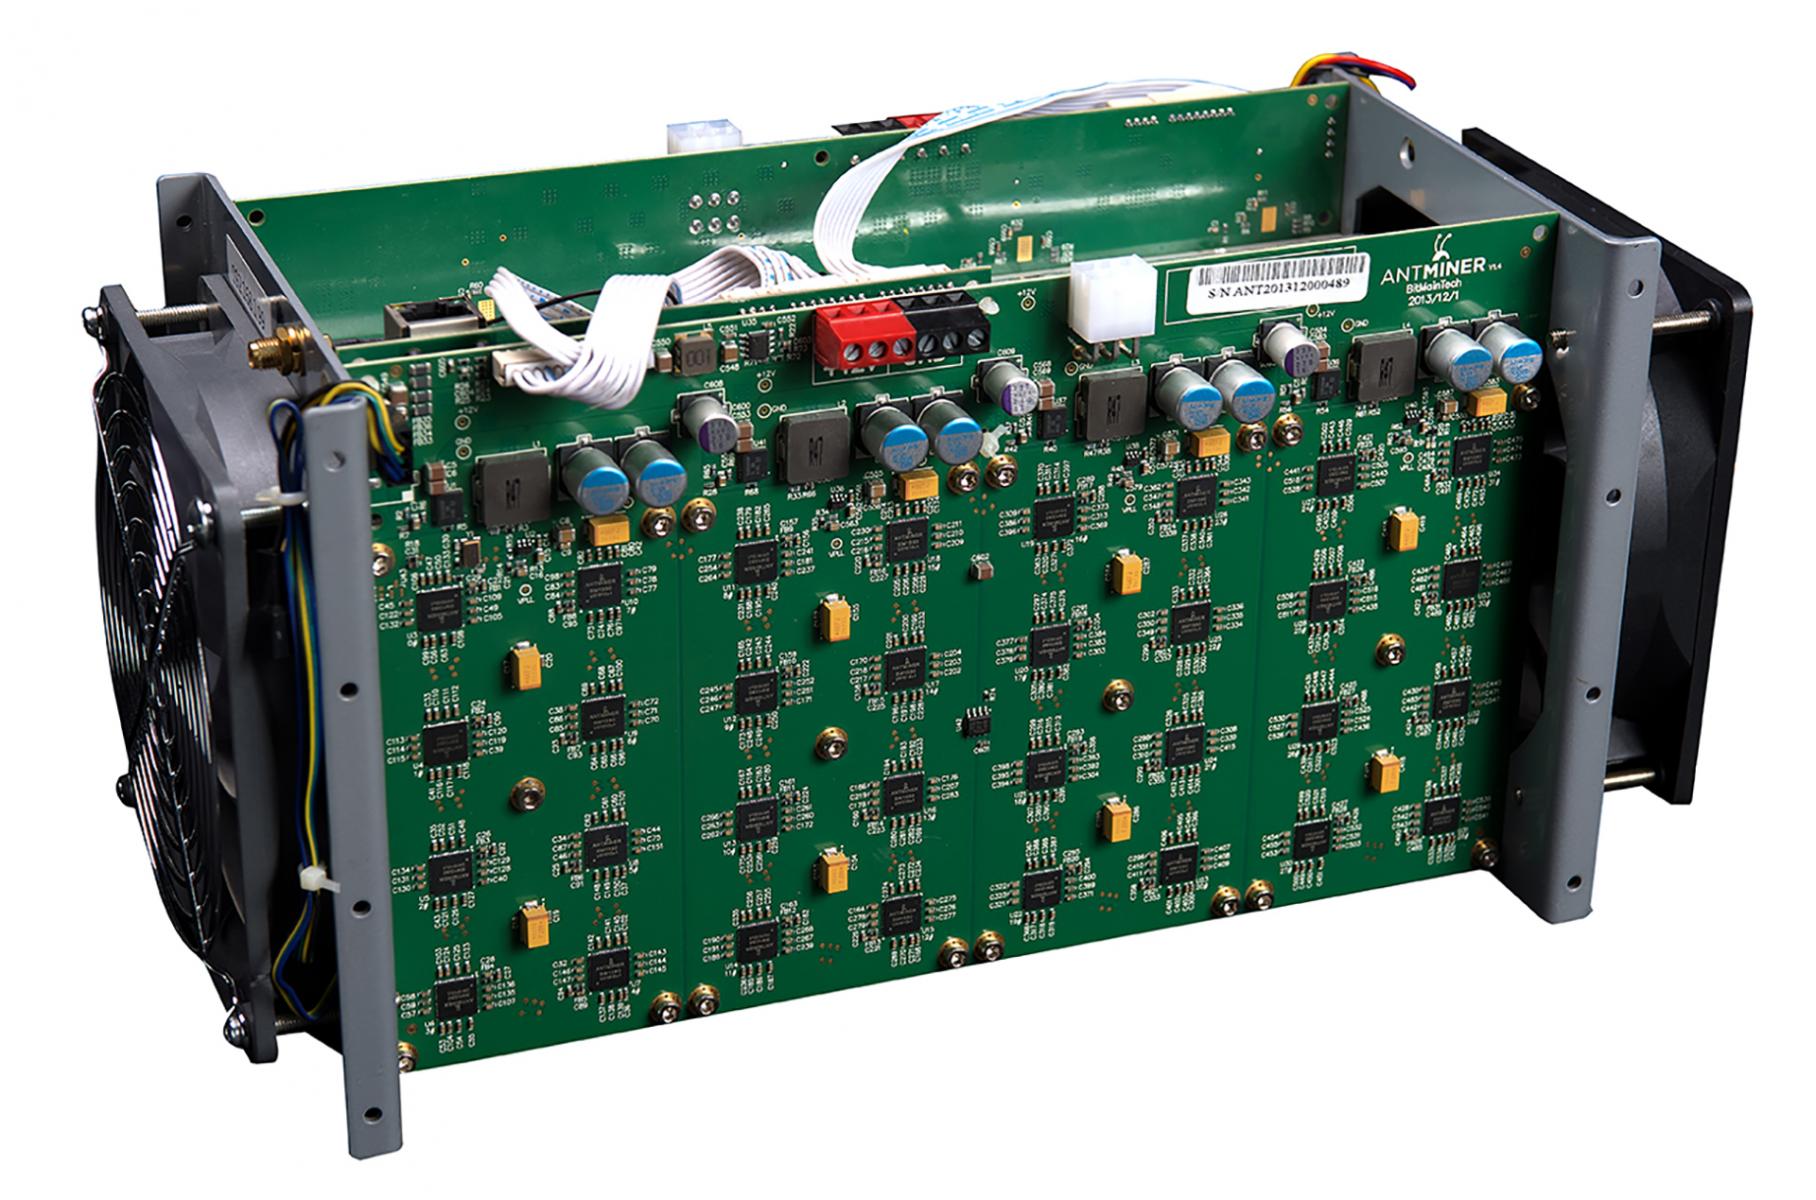 Ordinateur fait de multiples cartes de circuit vertes exposées, de câbles et d’un ventilateur.